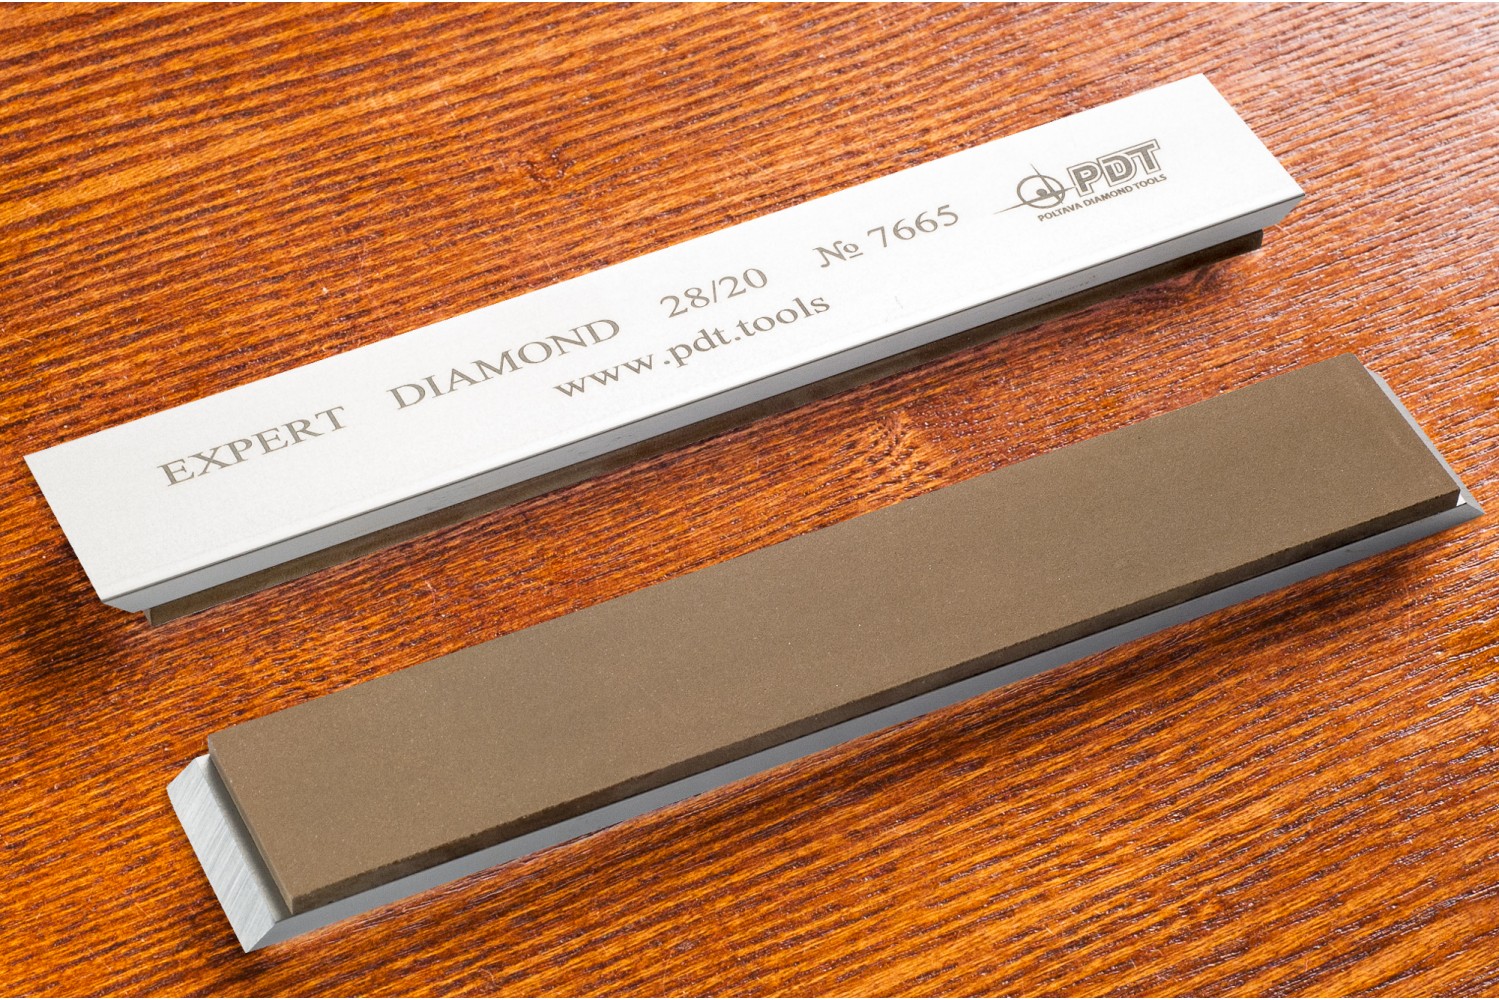 Алмазный брусок для заточки PDT EXPERT 150-25-3мм 28/20 мкм на алюминиевом бланке камень opinel для заточки ножей 10см камень italy 001837 natural lombardy